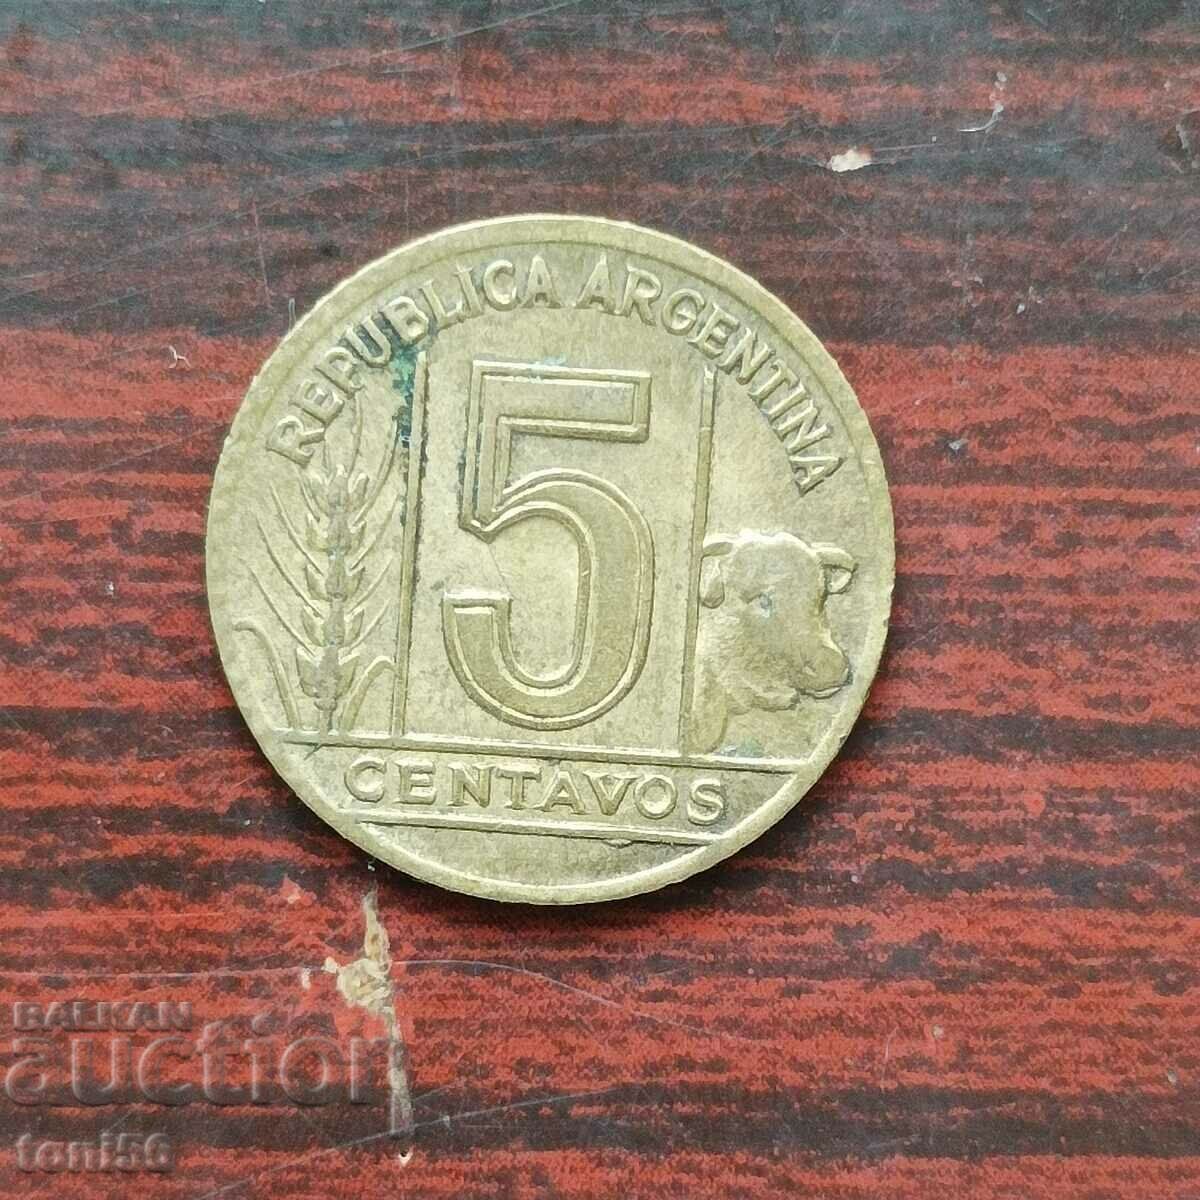 Argentina 5 centavos 1944